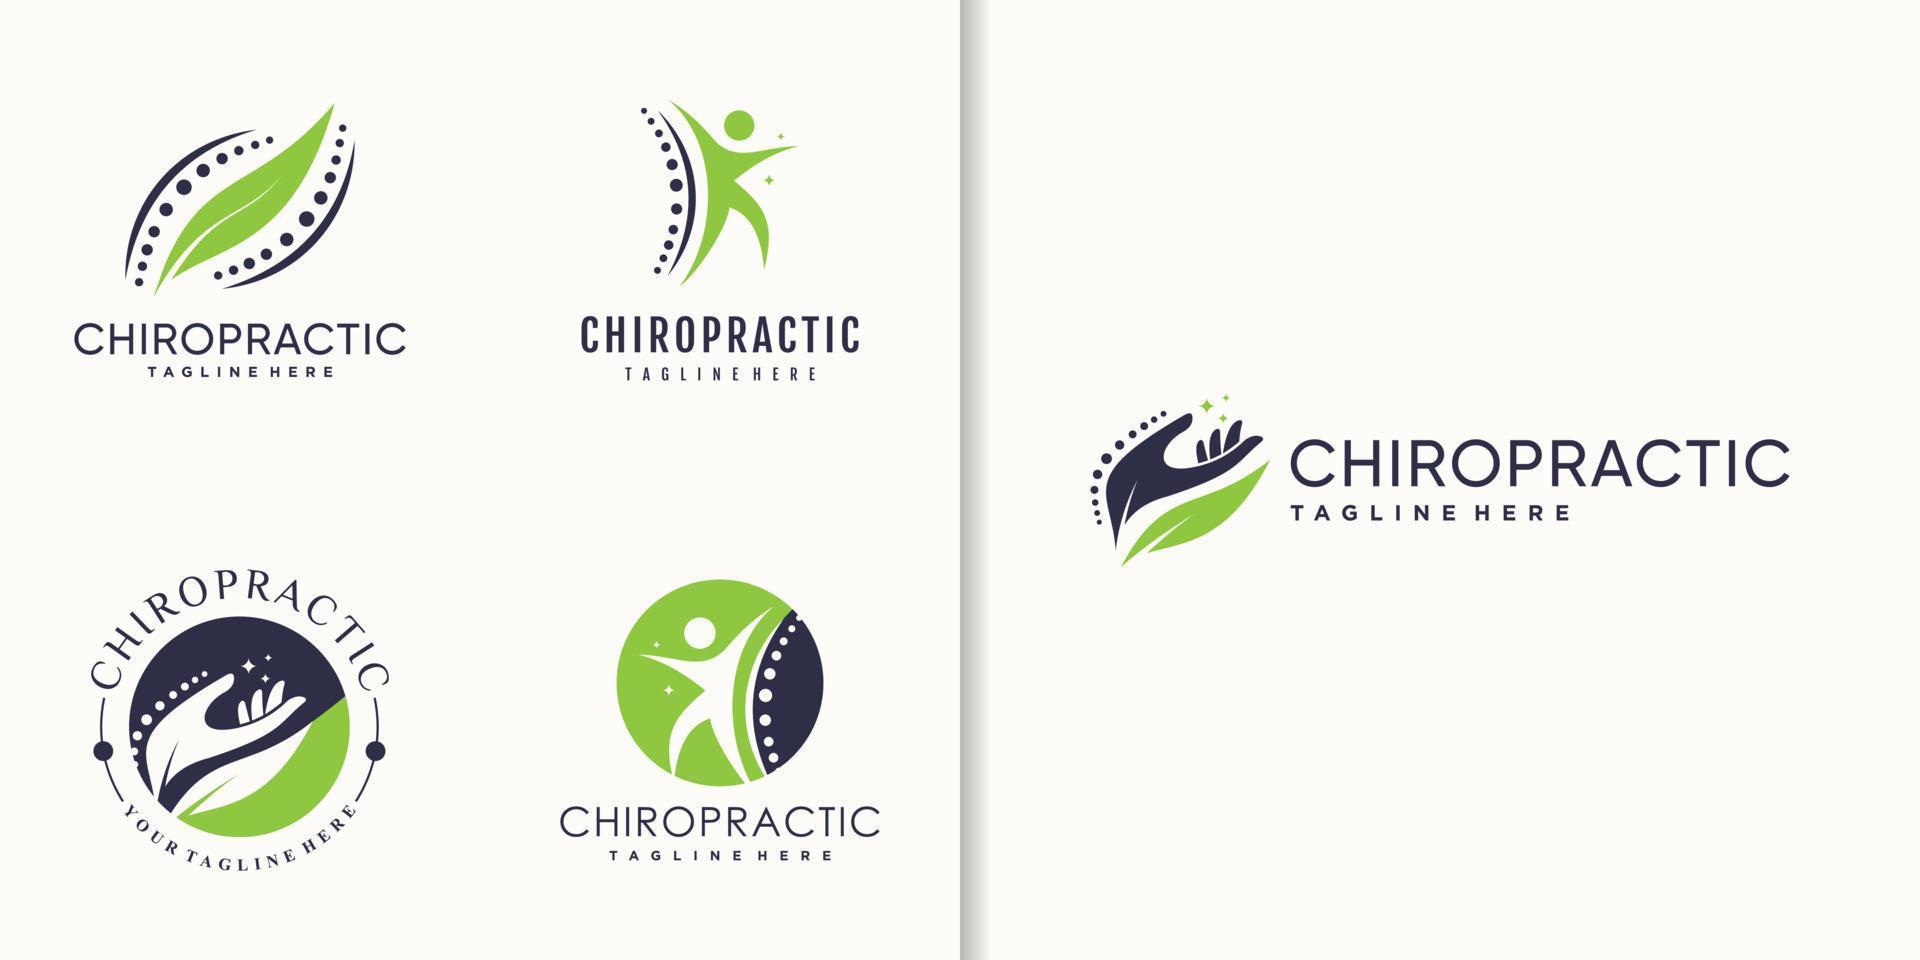 kiropraktik logotyp för sjukvård premium vektor